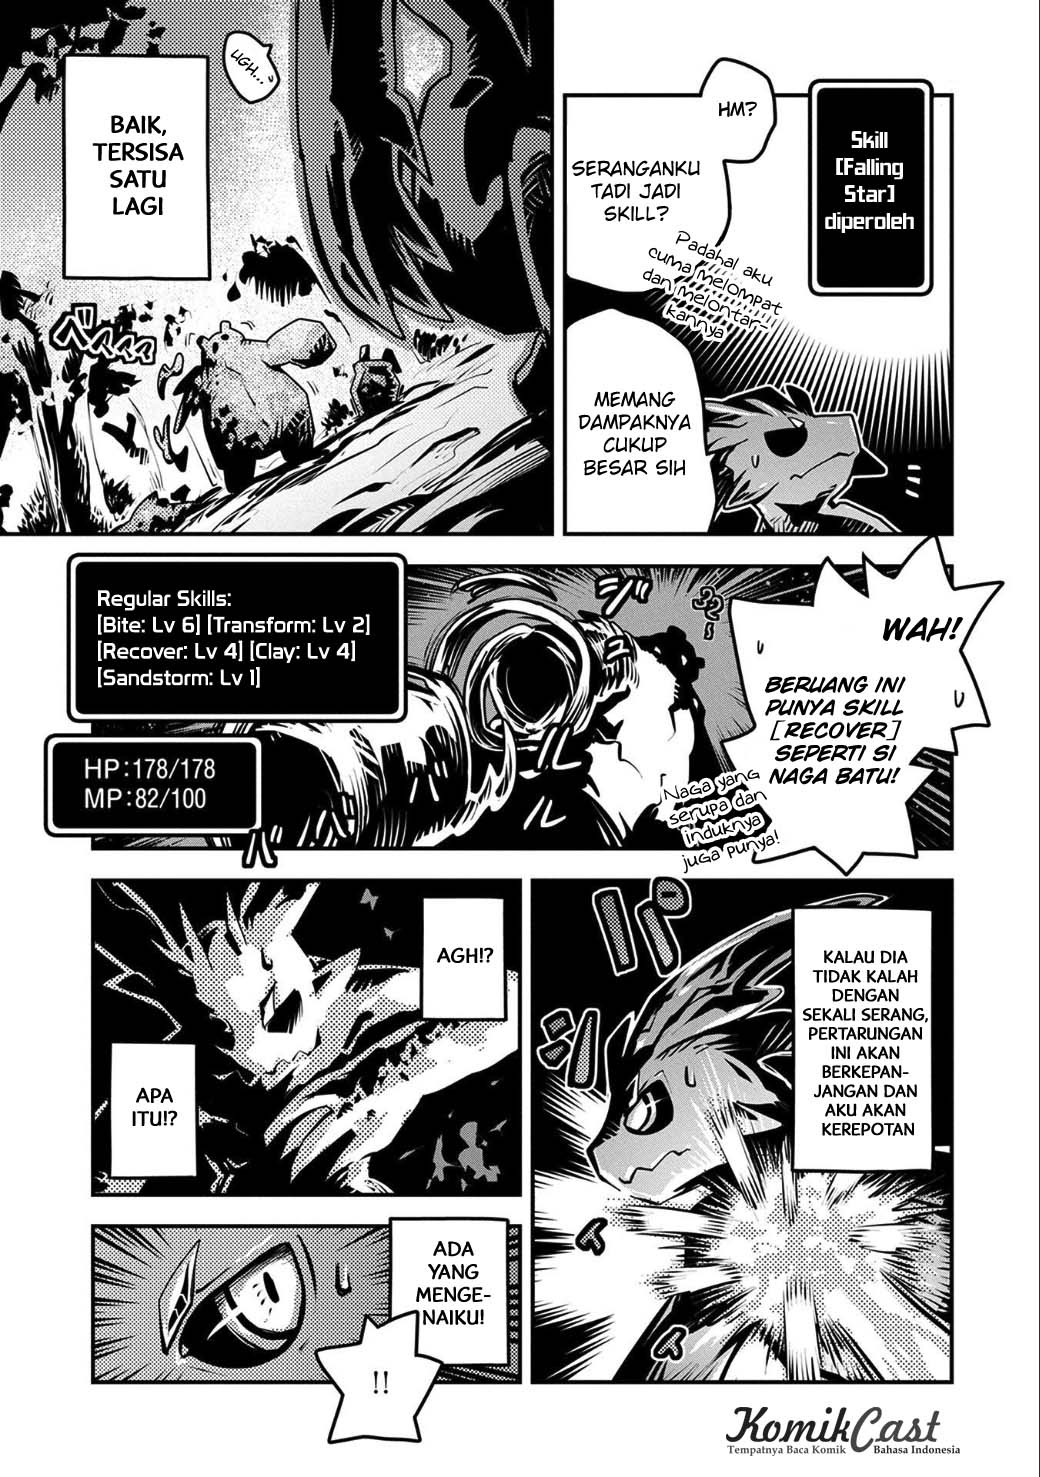 Tensei Shitara Dragon no Tamago Datta – Ibara no Dragon Road Chapter 04